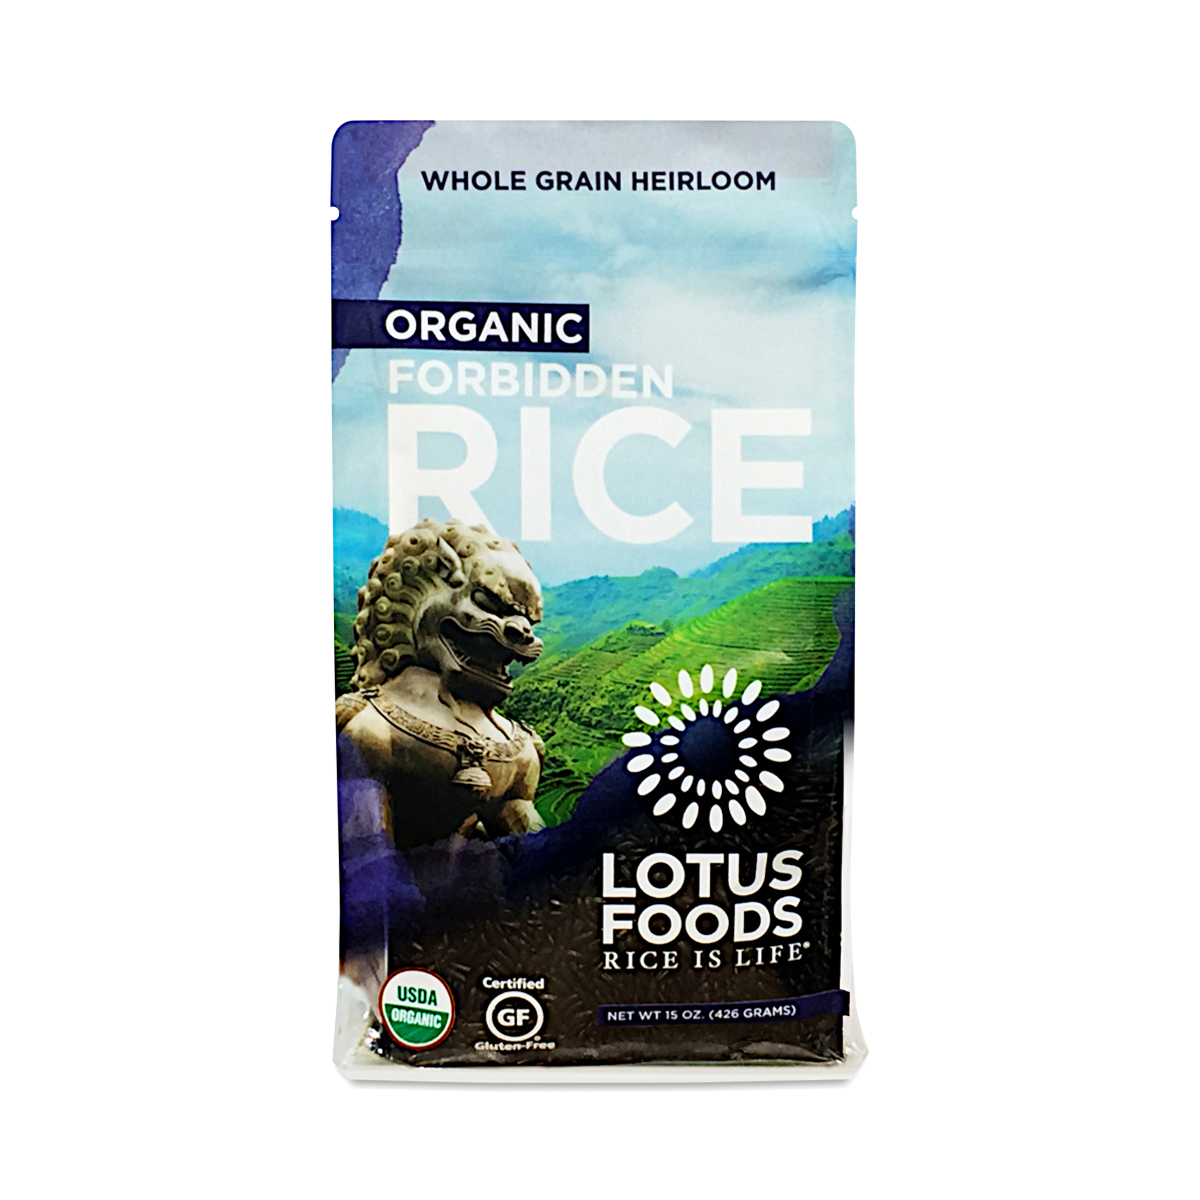 Lotus Foods Organic Forbidden Rice 15 oz bag